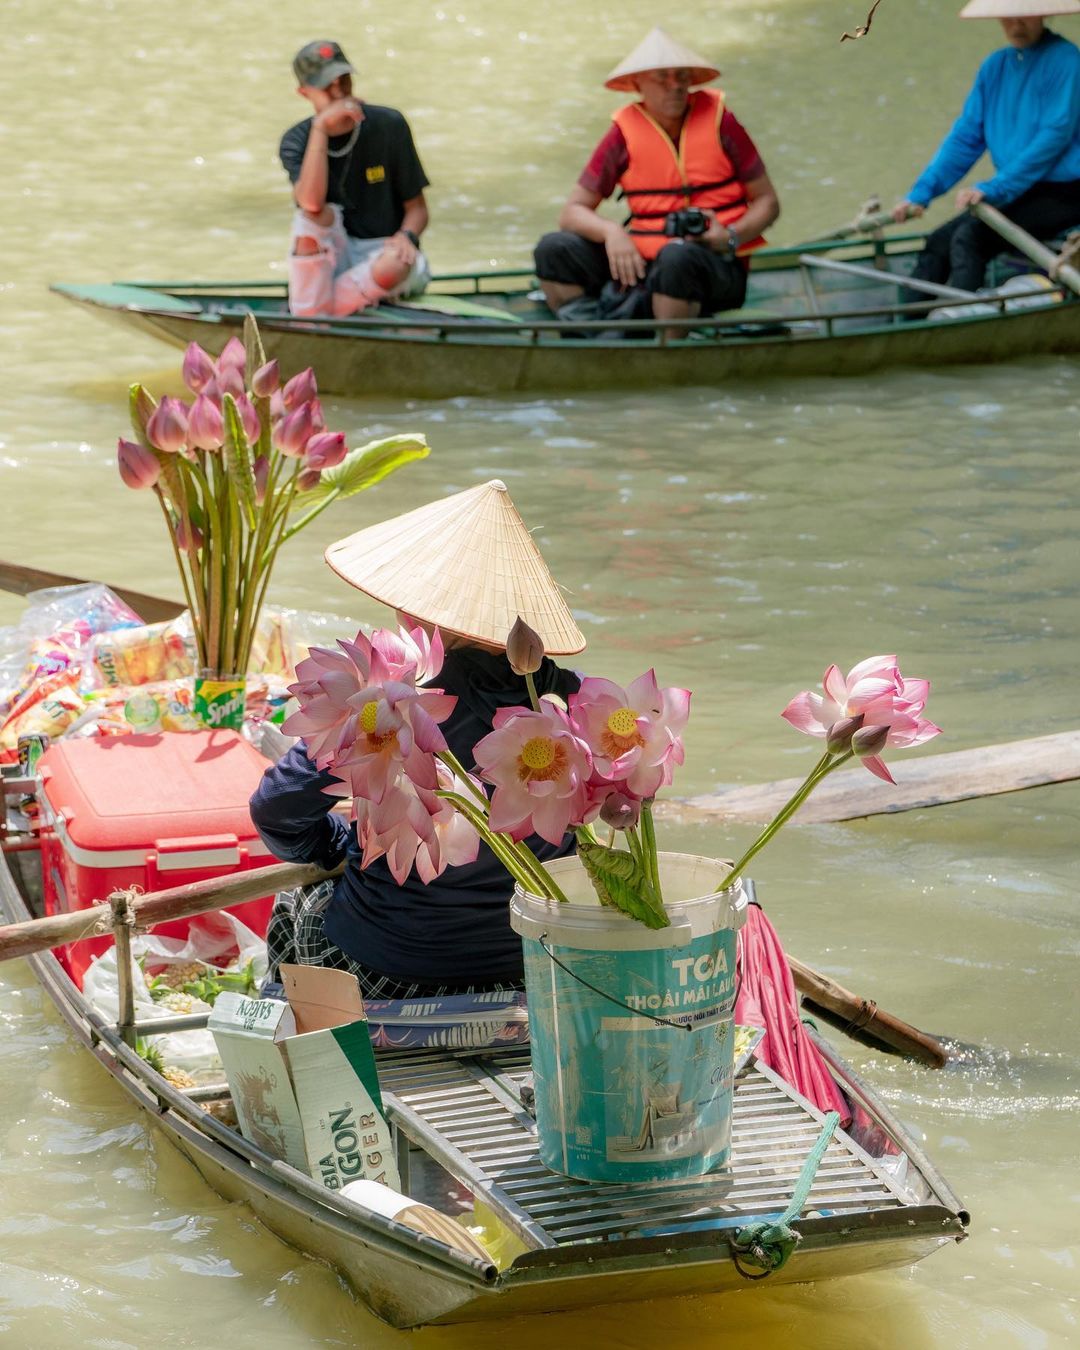 Du khách nước ngoài ngỡ ngàng trước cảnh này khi ngồi thuyền trải nghiệm ở Ninh Bình - Ảnh 6.